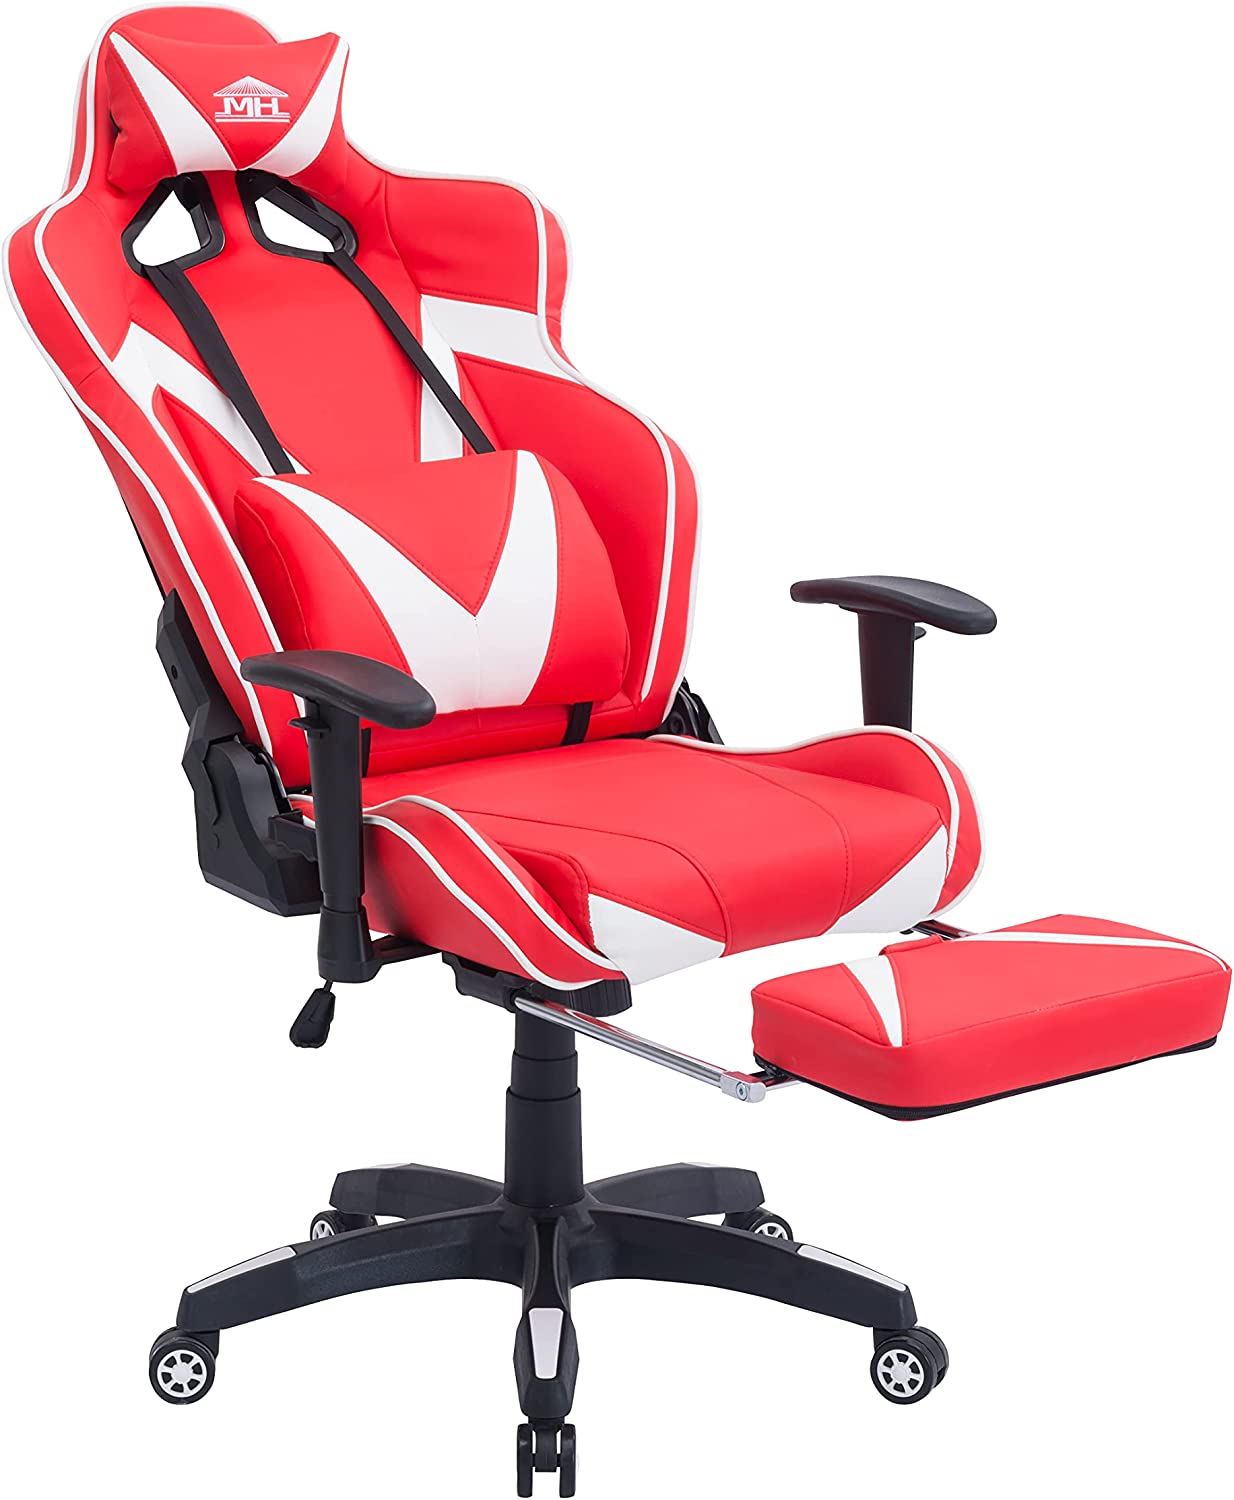 صندلی بازی کامپیوتری Multi Home Furniture MH-8885 قرمز سفید - ارسال ۱۰ الی ۱۵ روز کاری